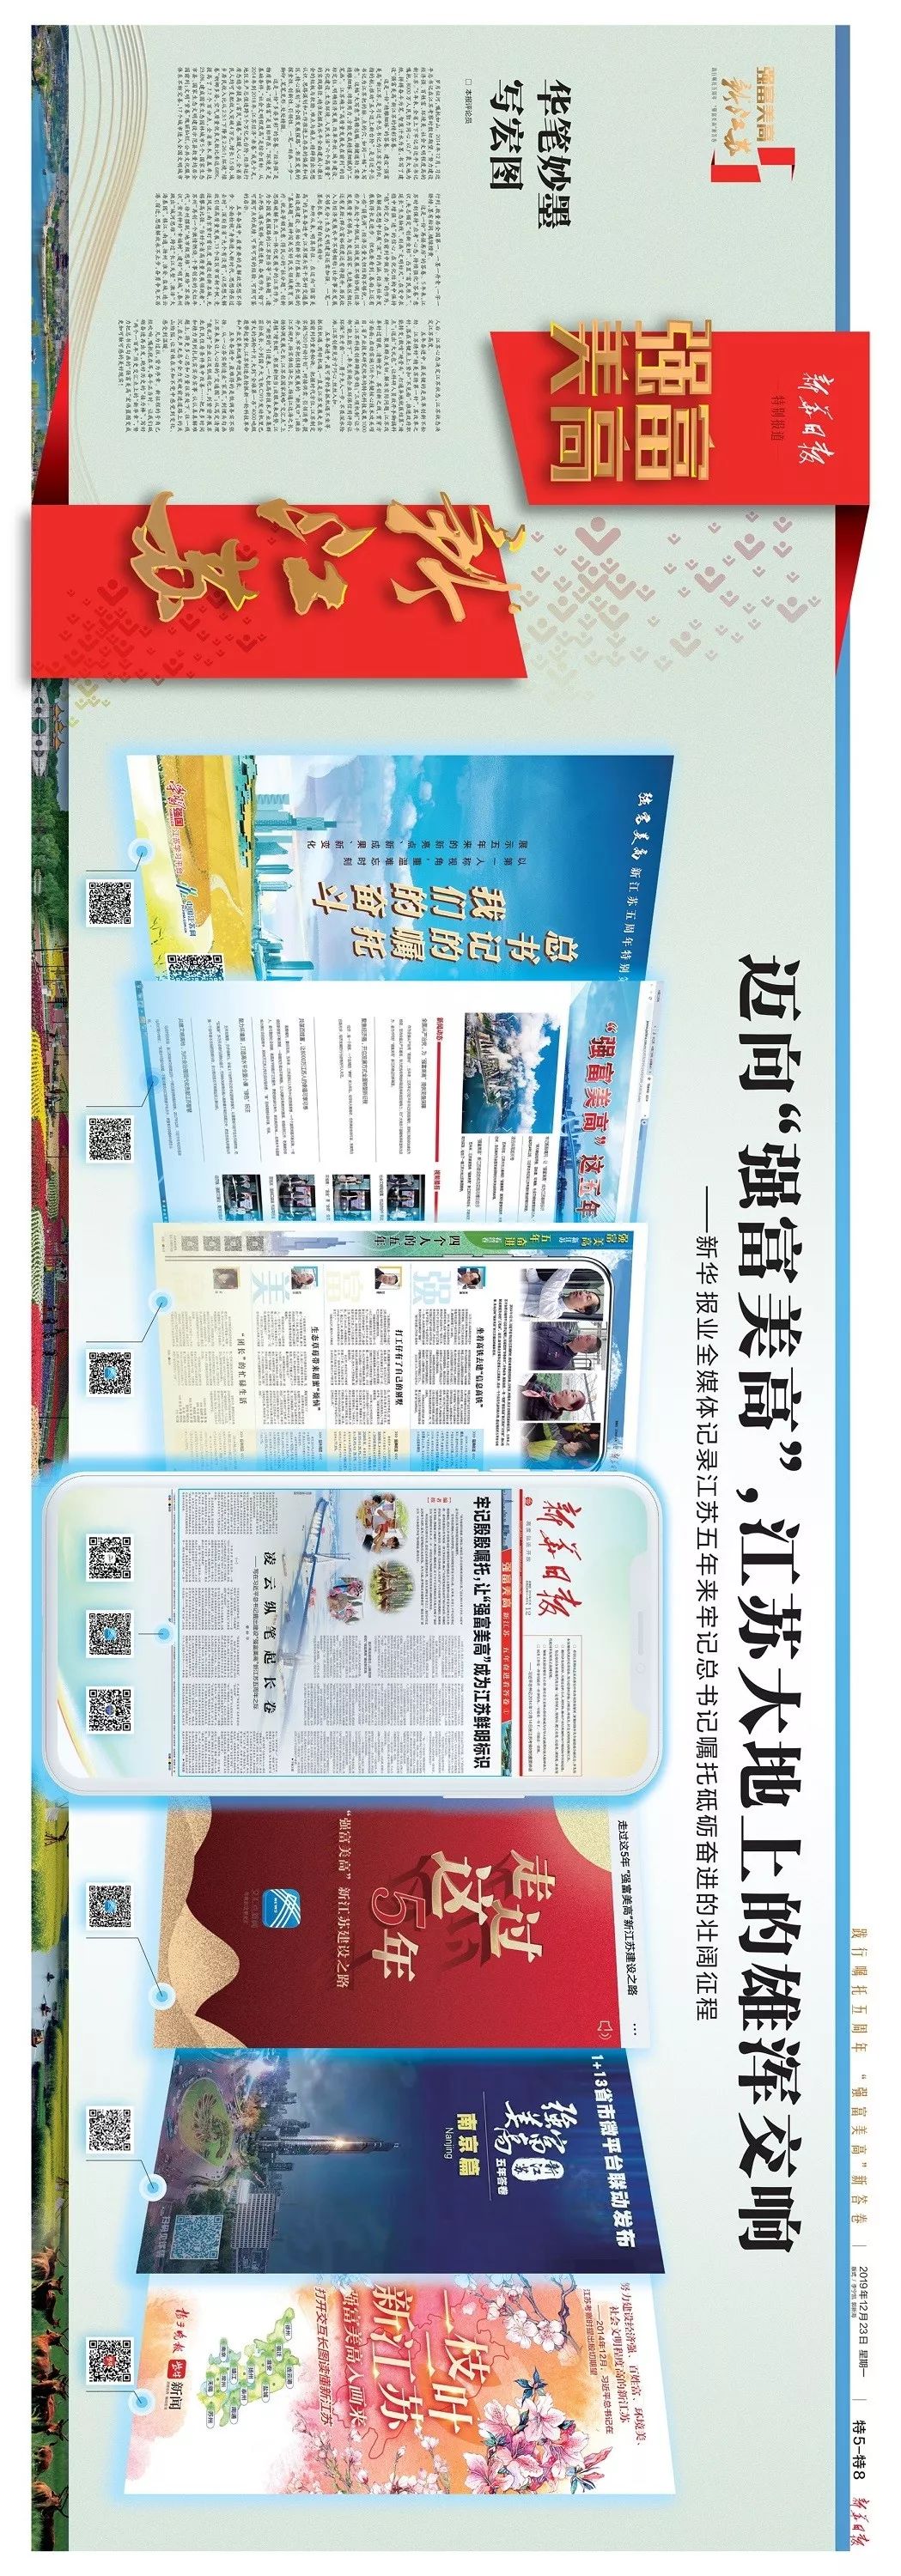 新华日报出了份15米的超长报纸